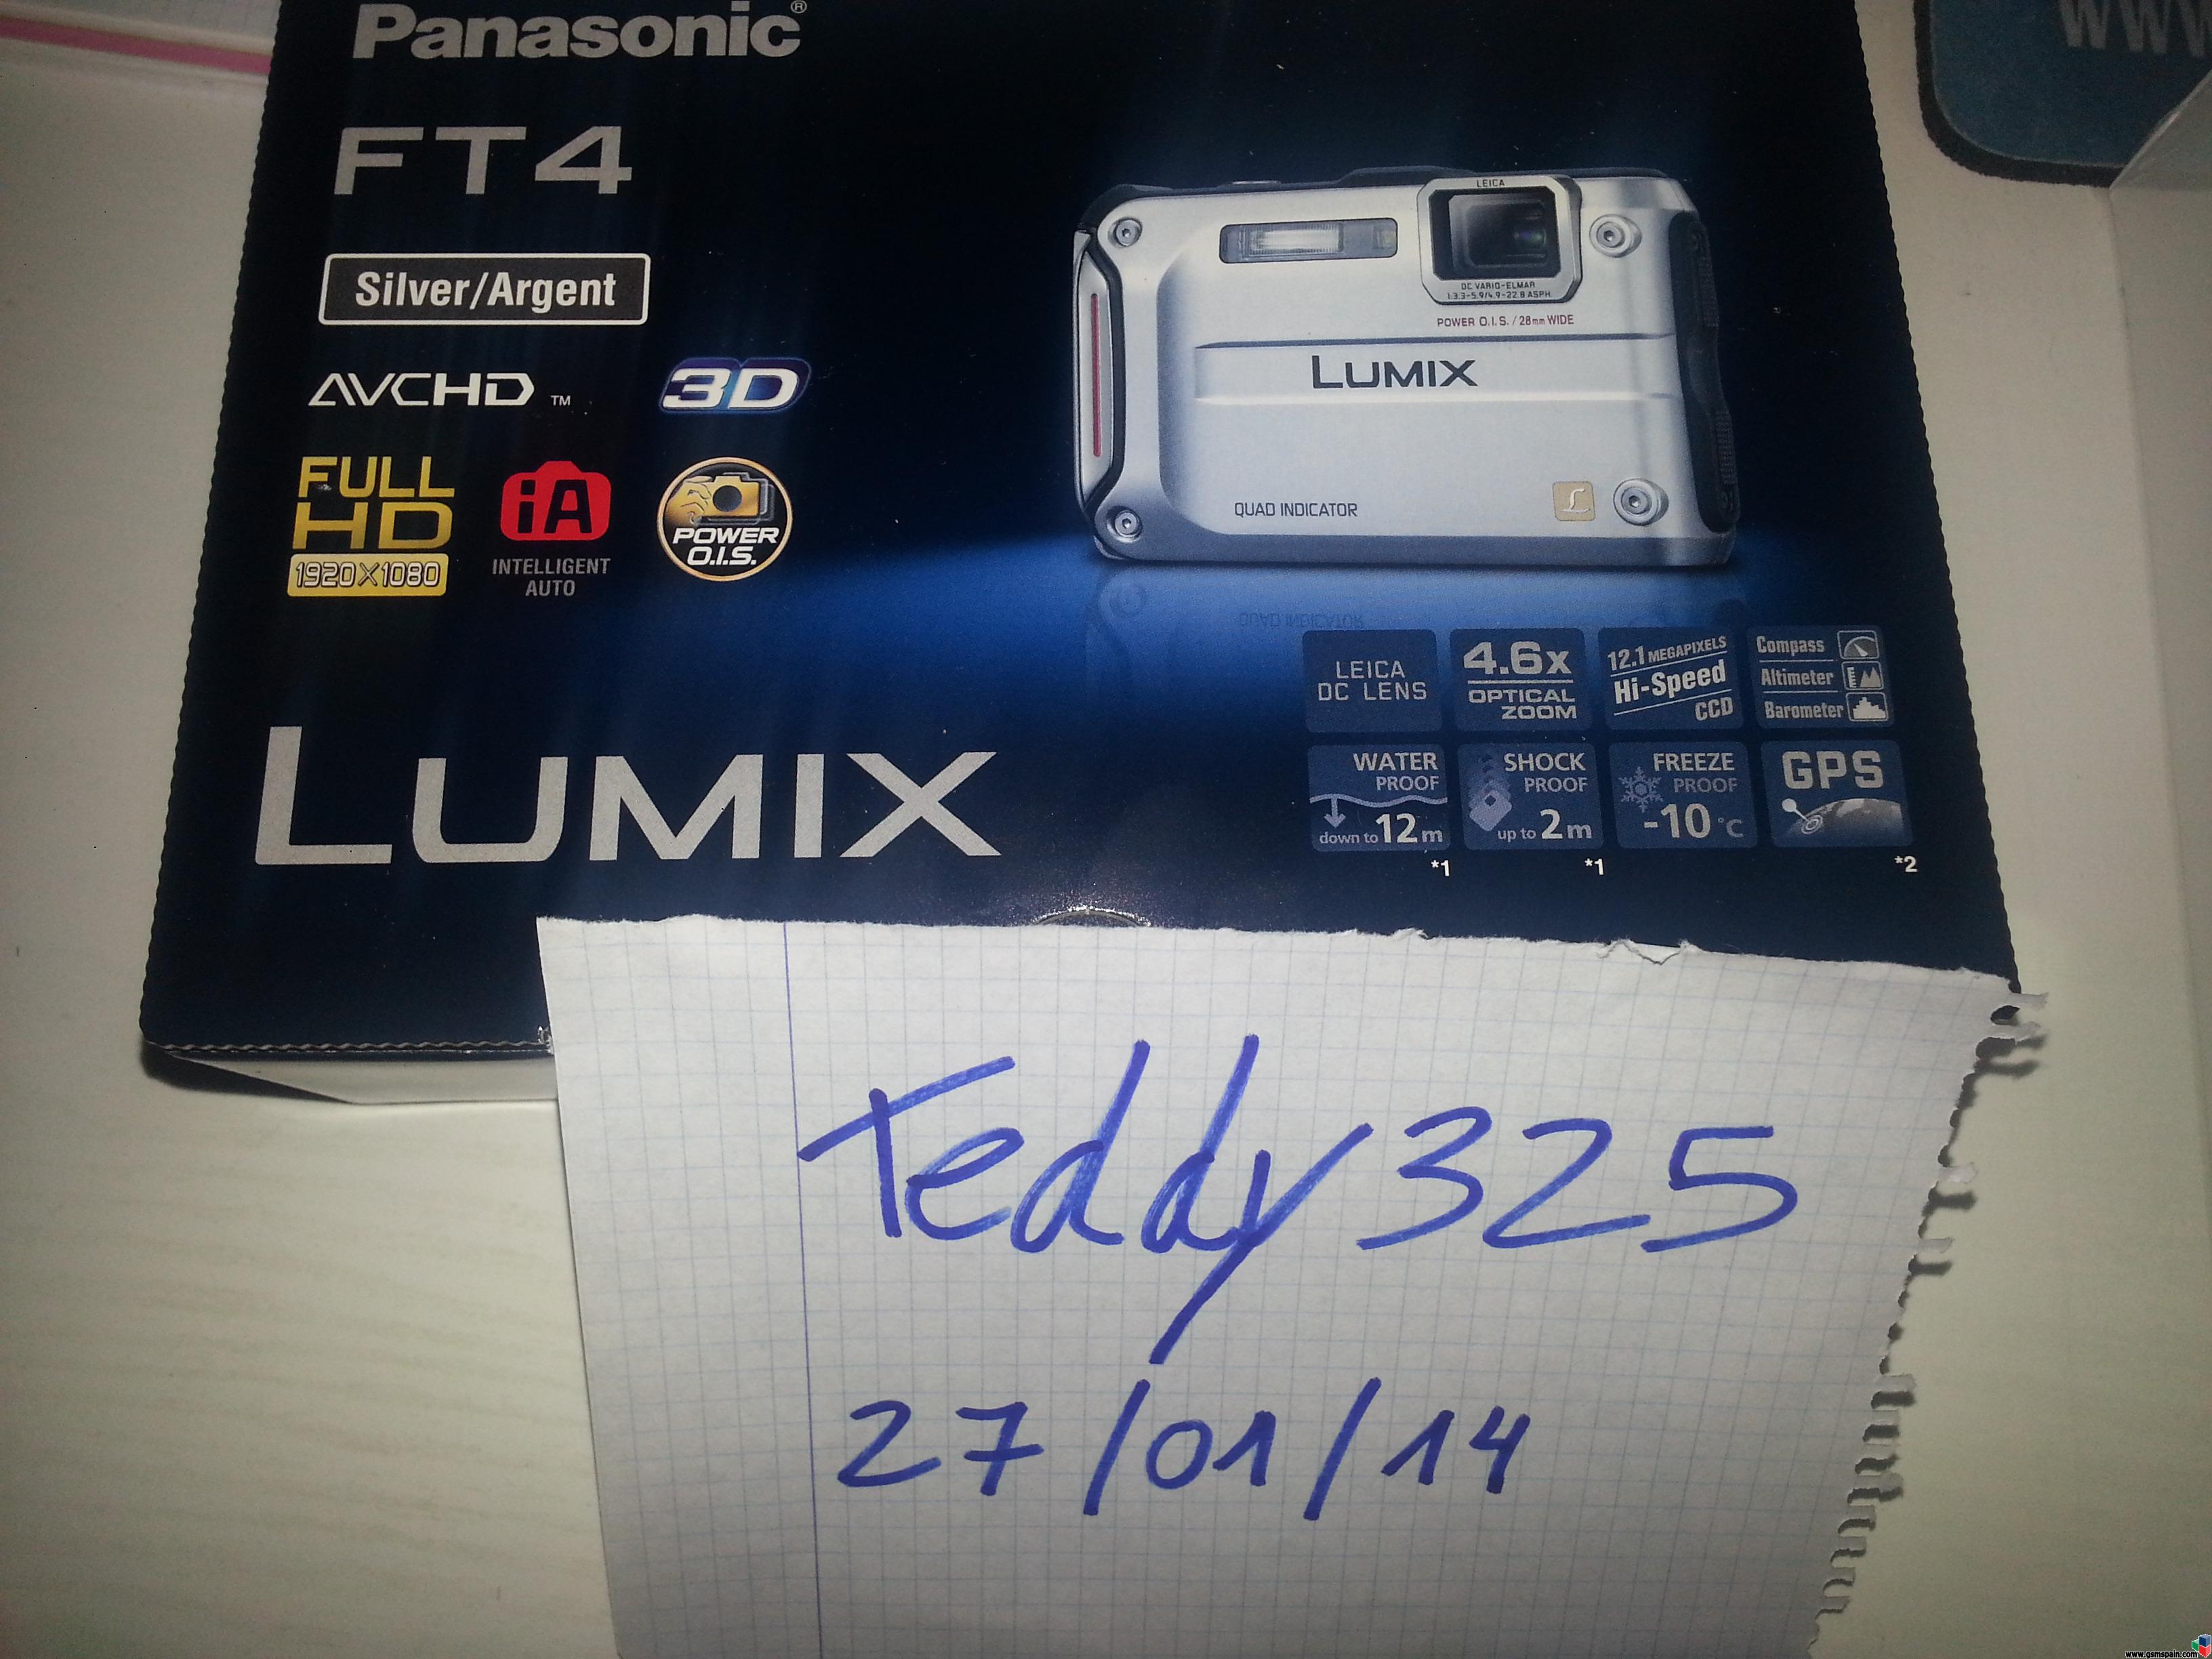 [VENDO] Panasonic Lumix DMC FT4, totalmente nuevo a estrenar!